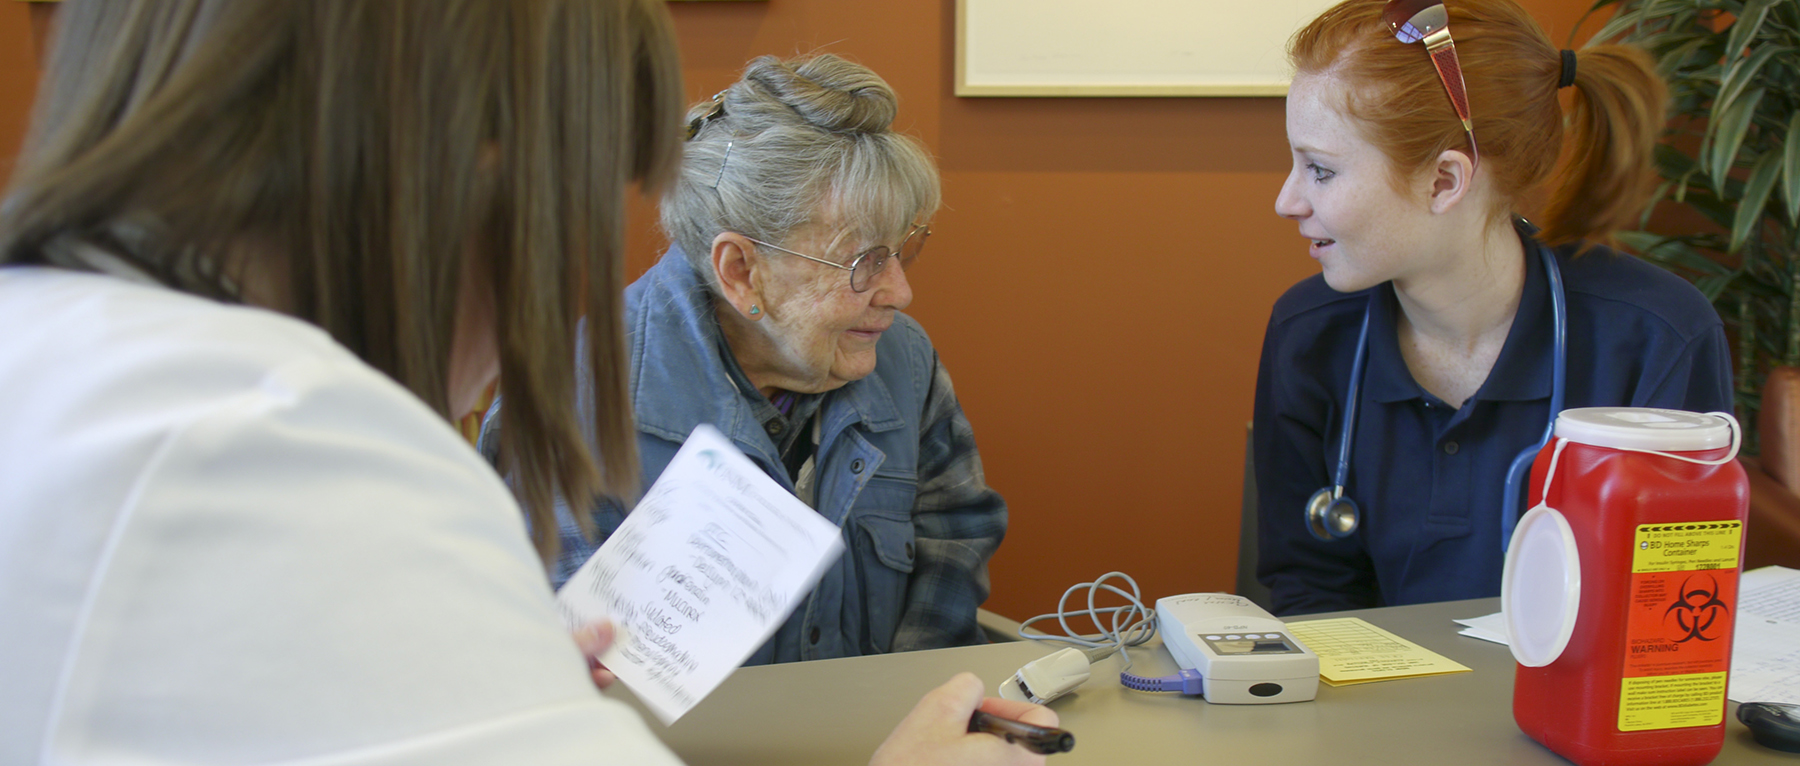 नर्सों से बात करती एक बुजुर्ग महिला